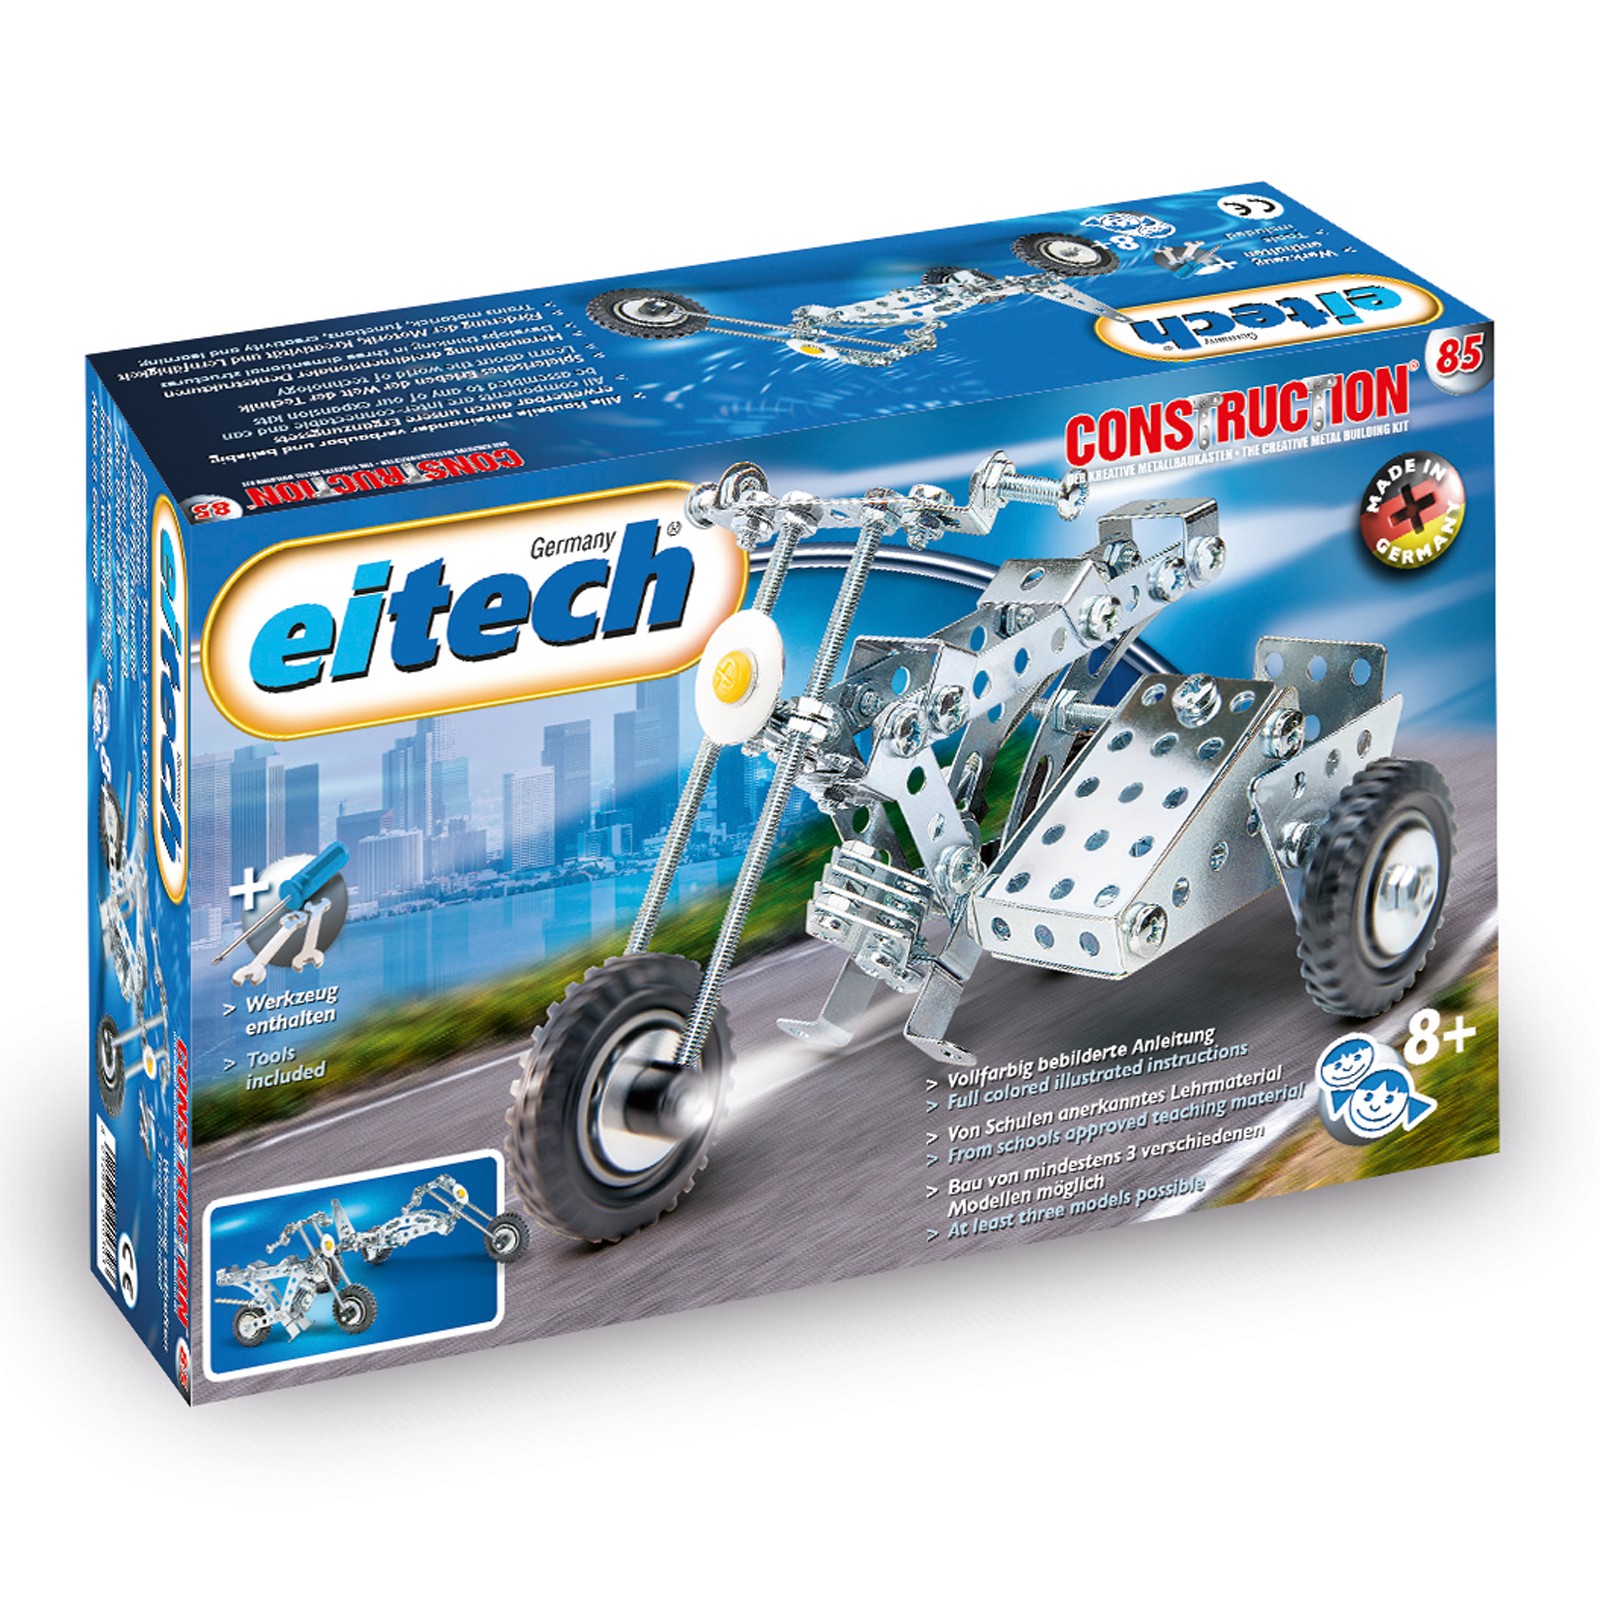 EITECH Starter Metallbaukasten Motorrad mit Beiwagen